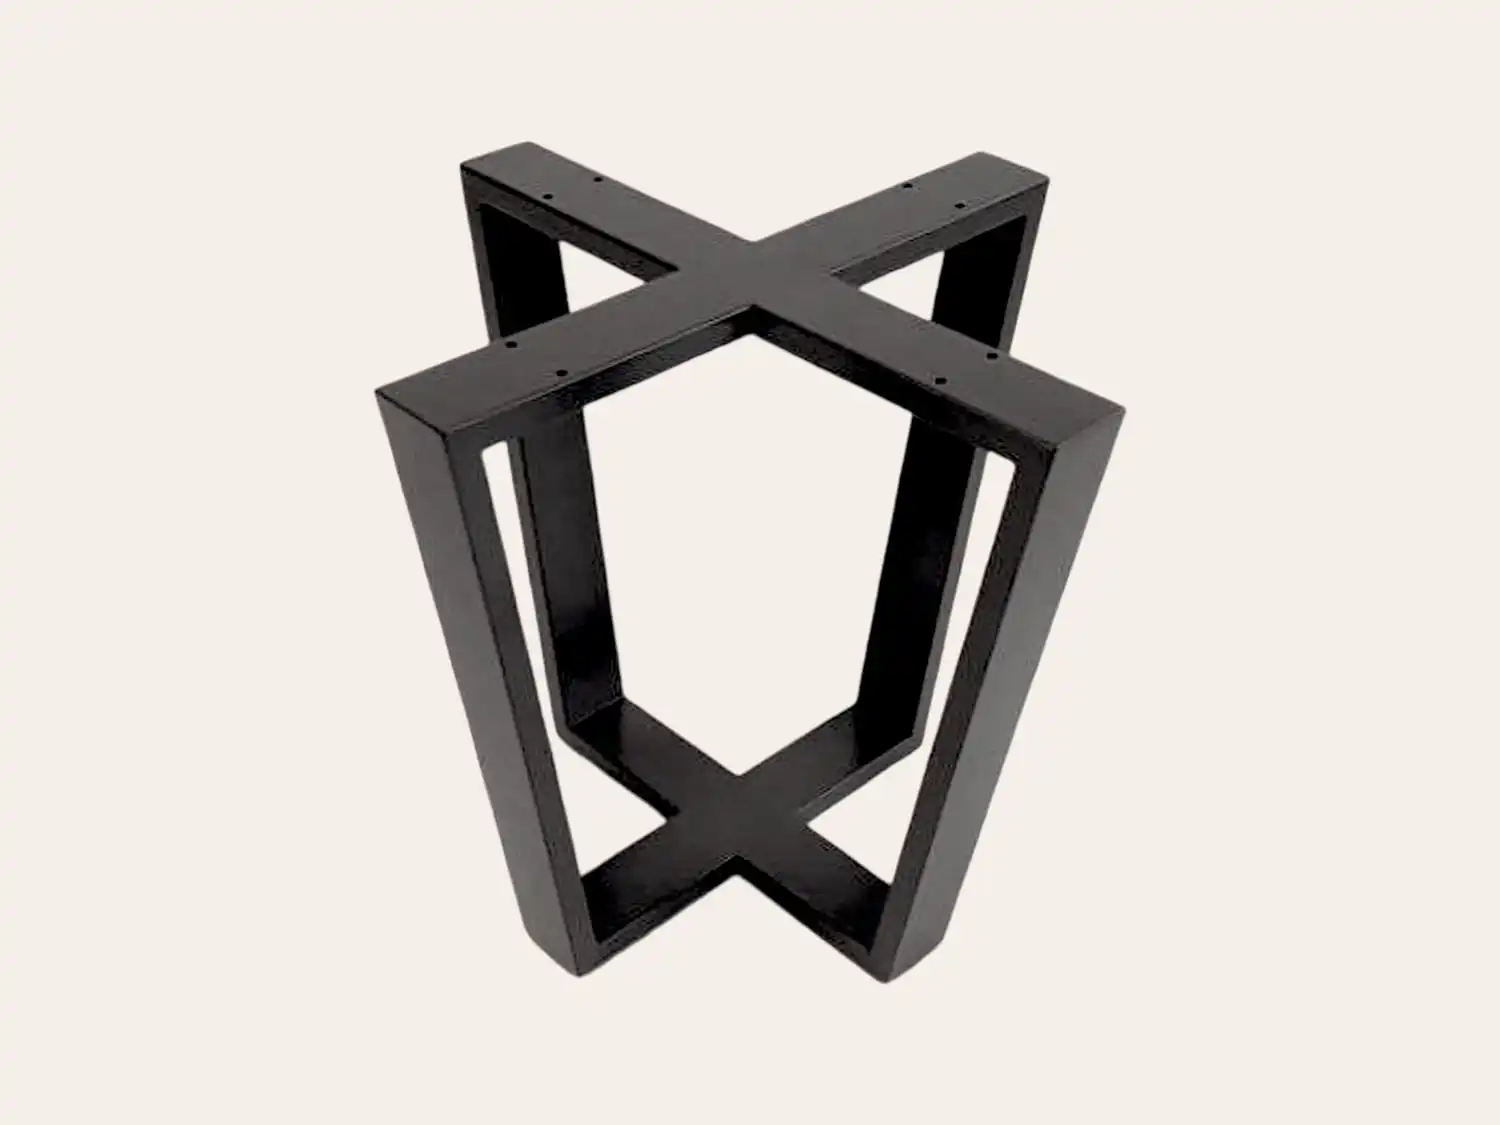 Une base de table noire en forme de pentagone 3D avec un effet d'illusion d'optique sur fond clair.